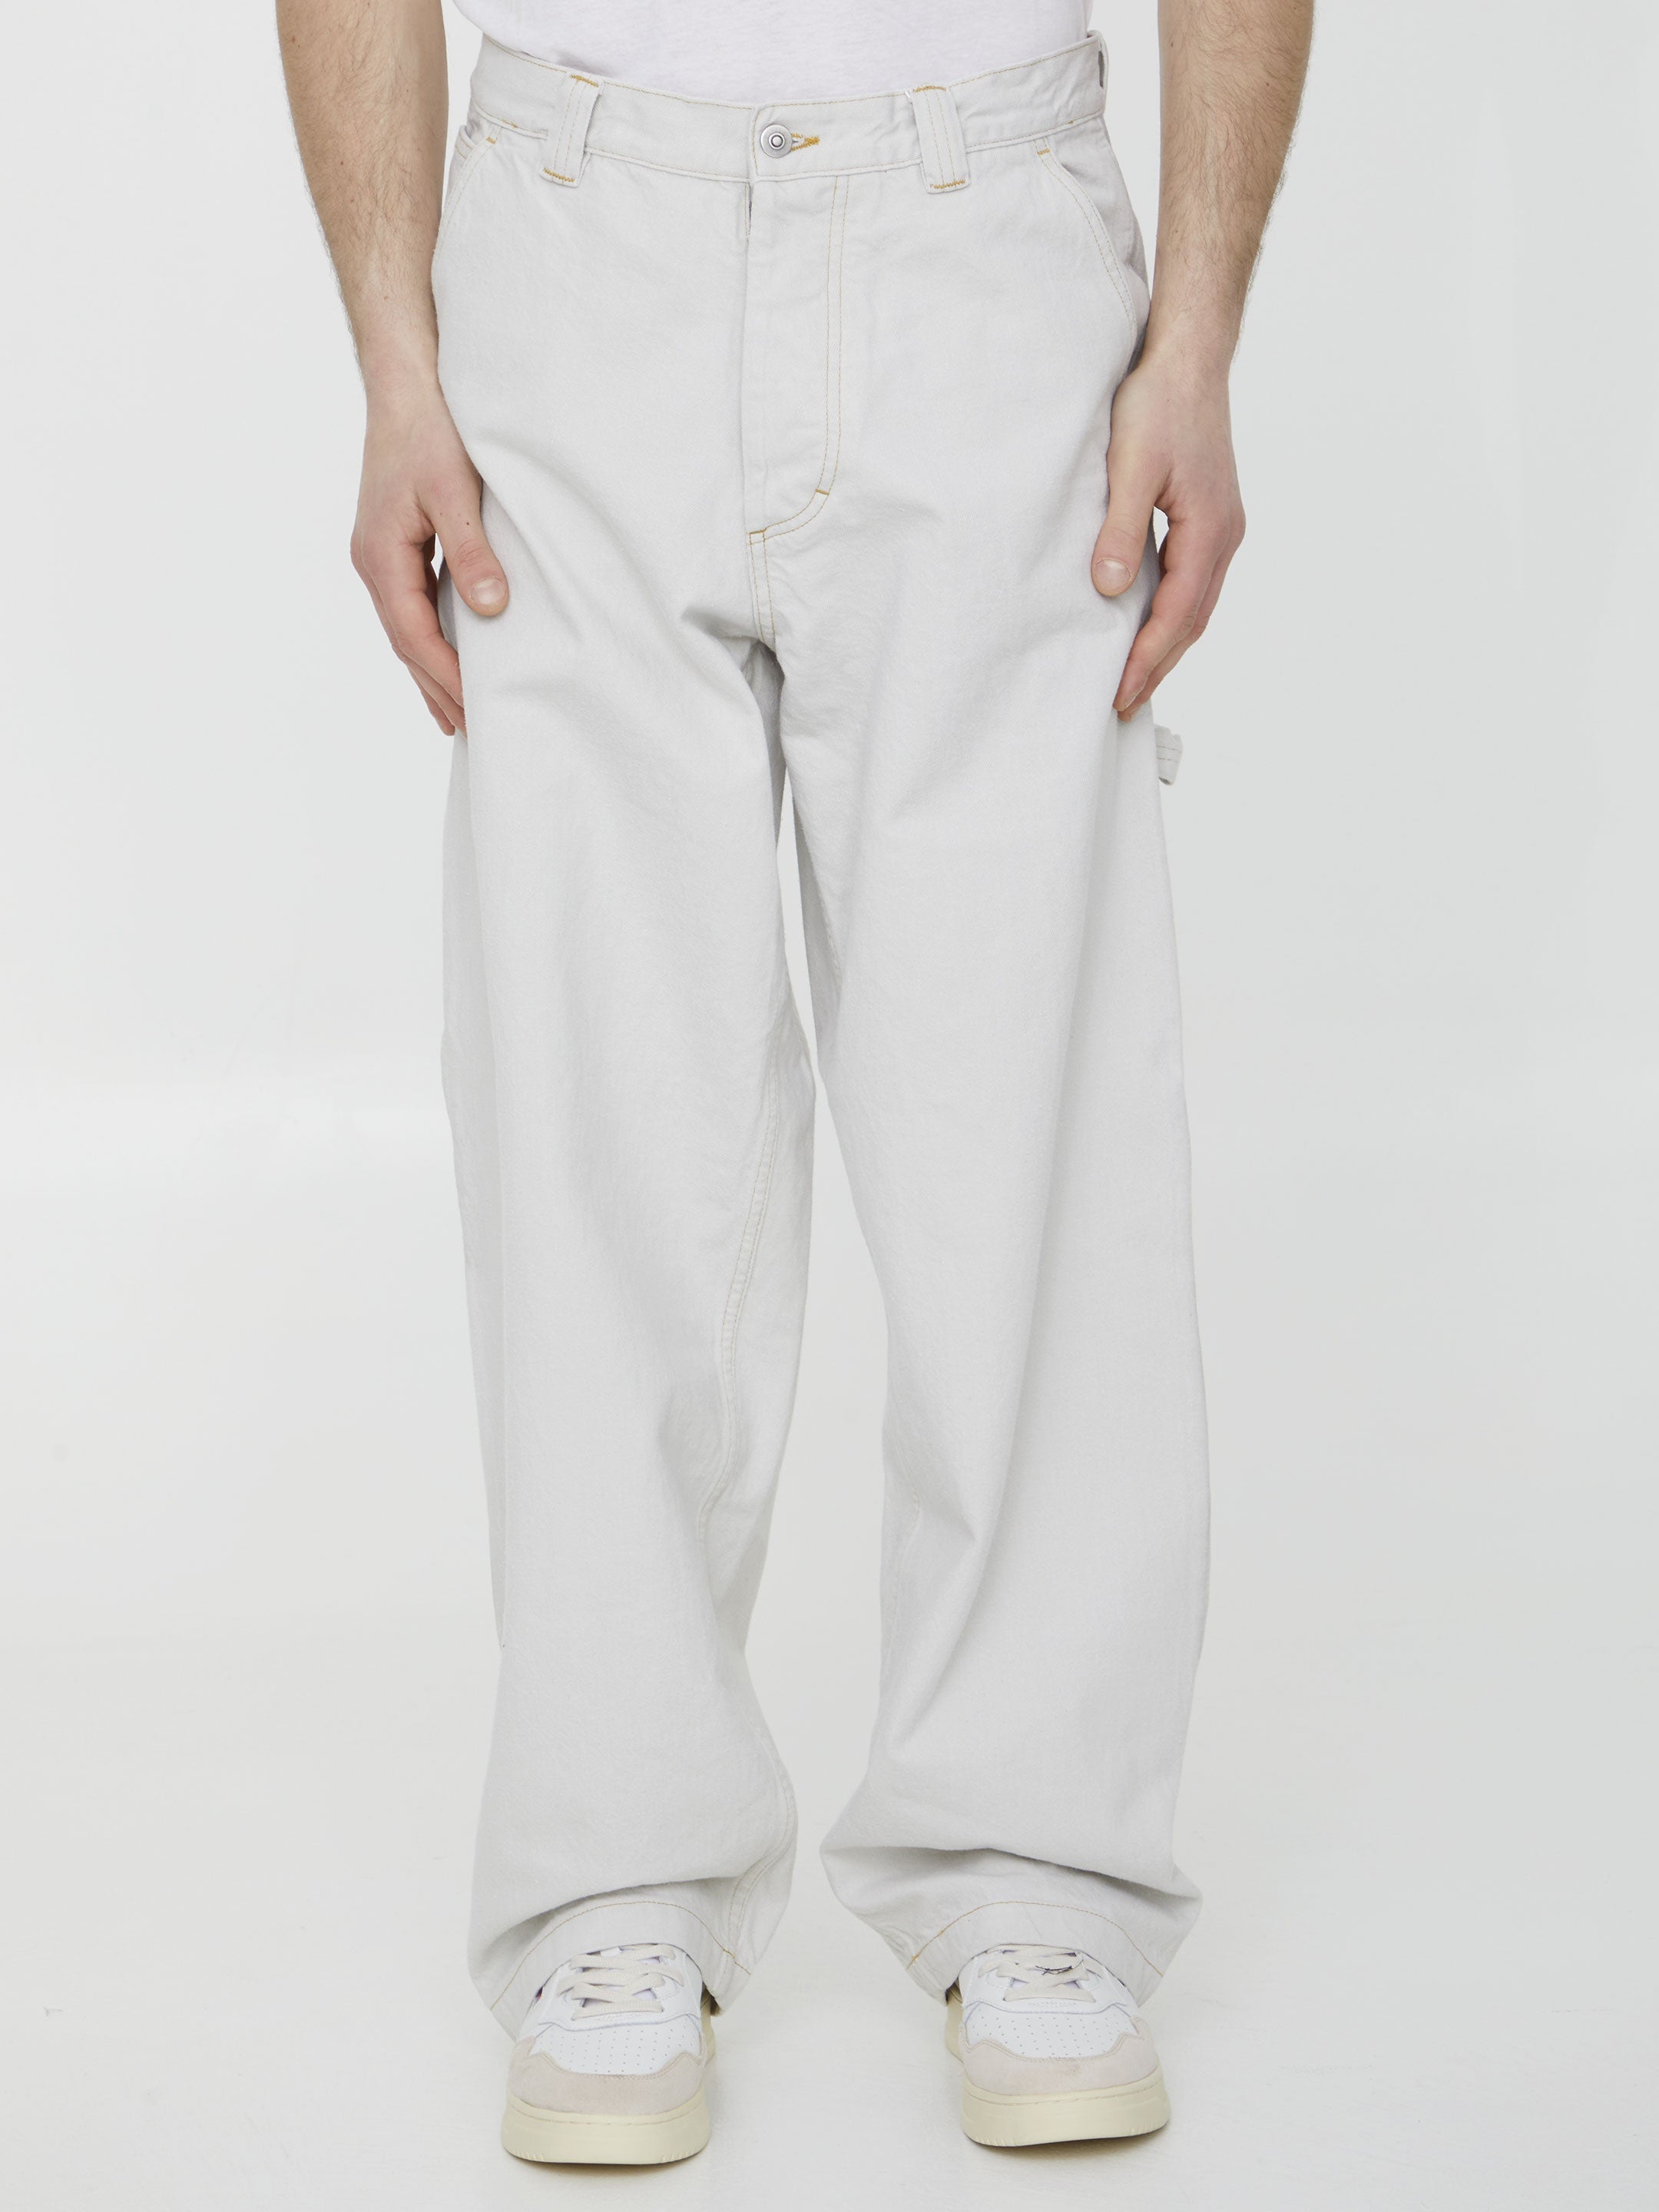 MAISON-MARGIELA-OUTLET-SALE-Cotton-denim-trousers-Hosen-32-WHITE-ARCHIVE-COLLECTION.jpg